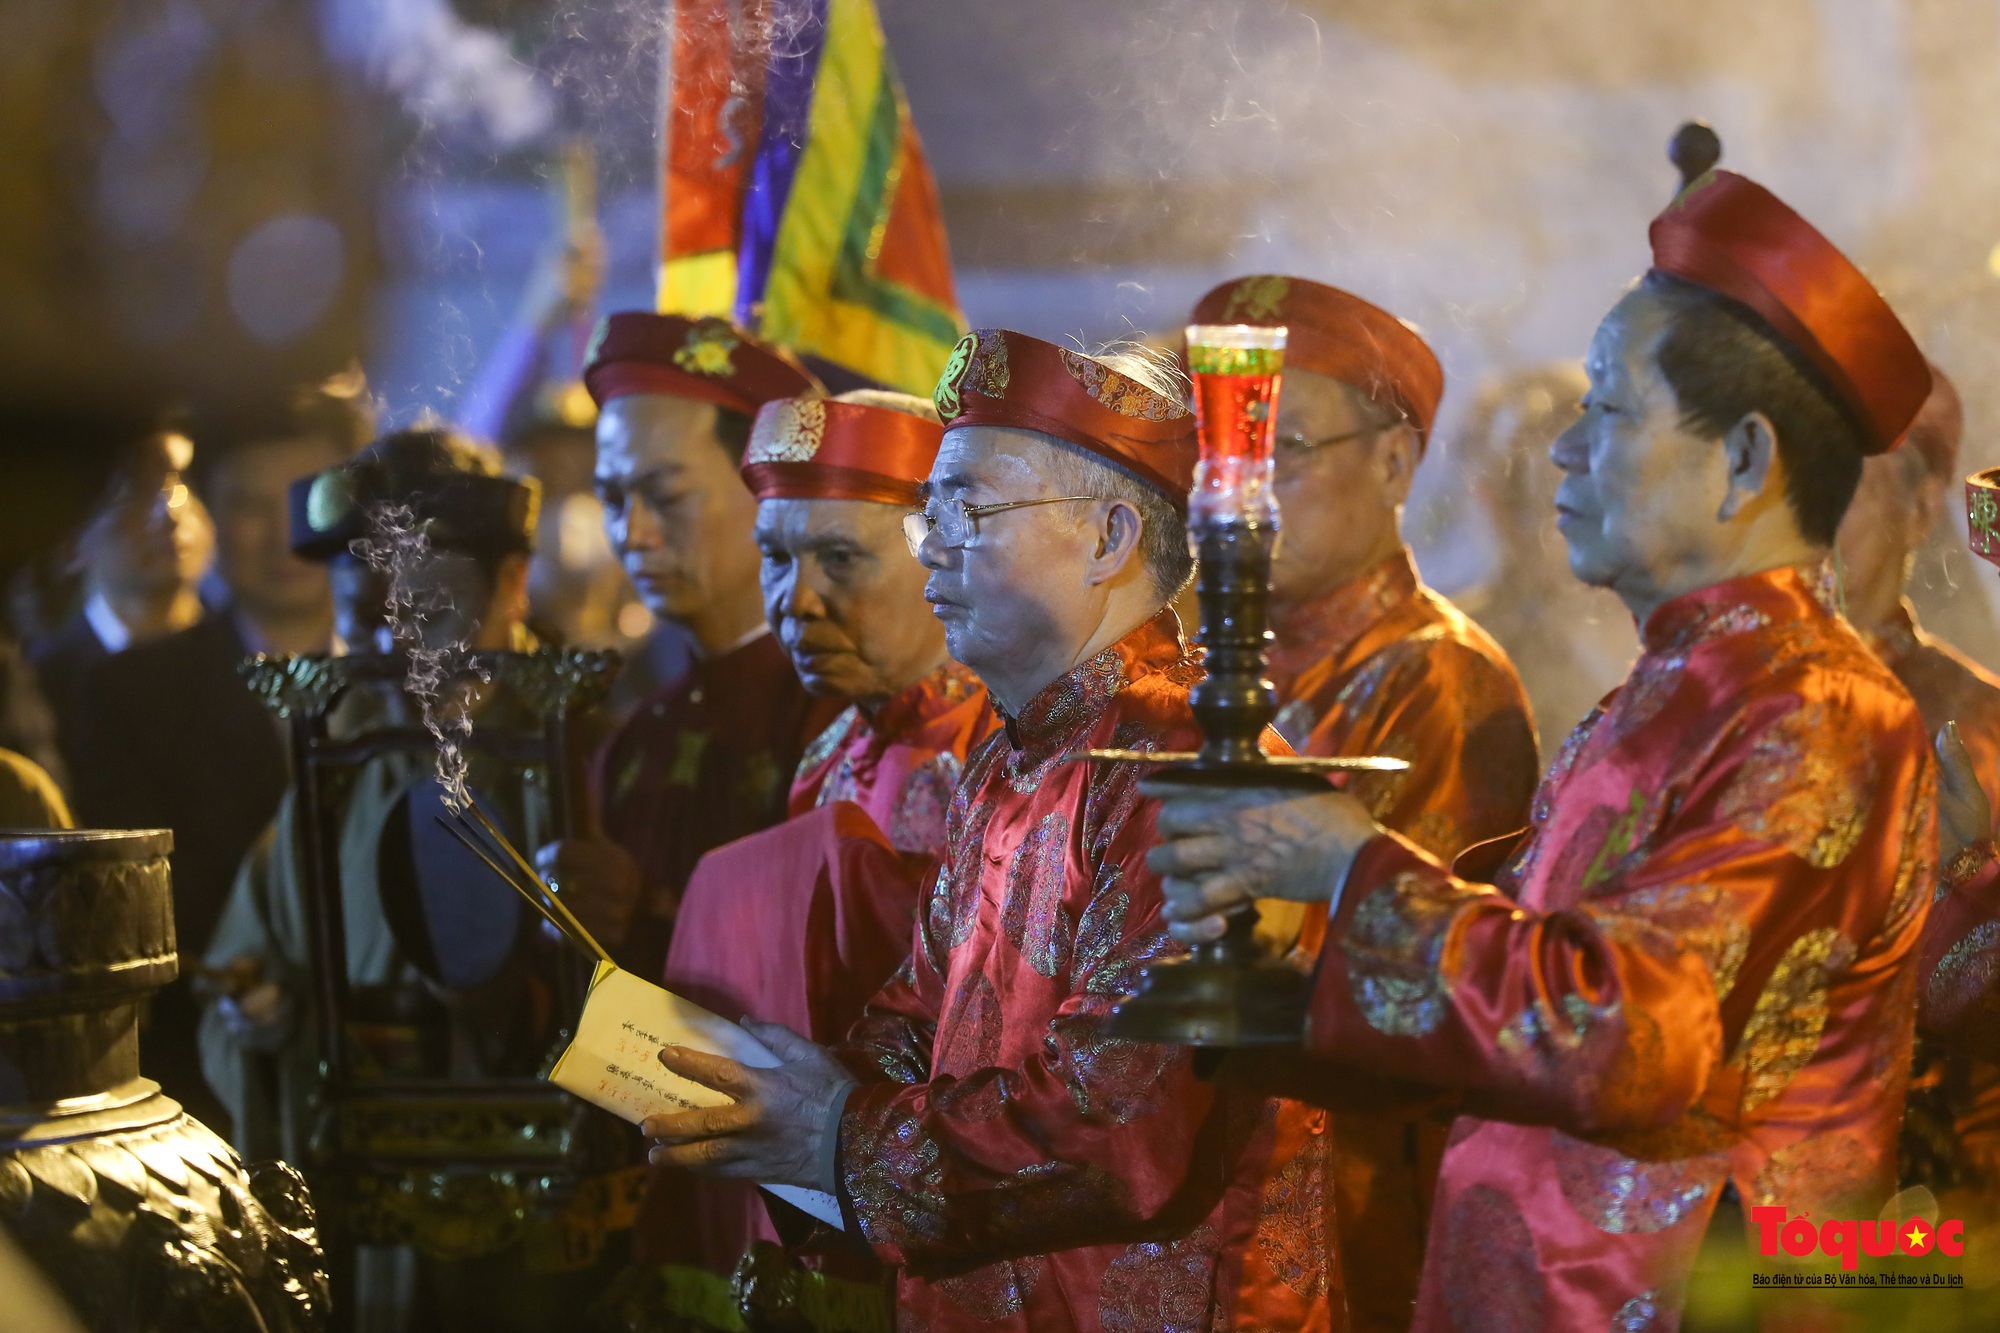 Hàng ngàn người đổ về dự lễ khai ấn đền Trần diễn ra vào lúc nửa đêm ở Nam Định - Ảnh 8.